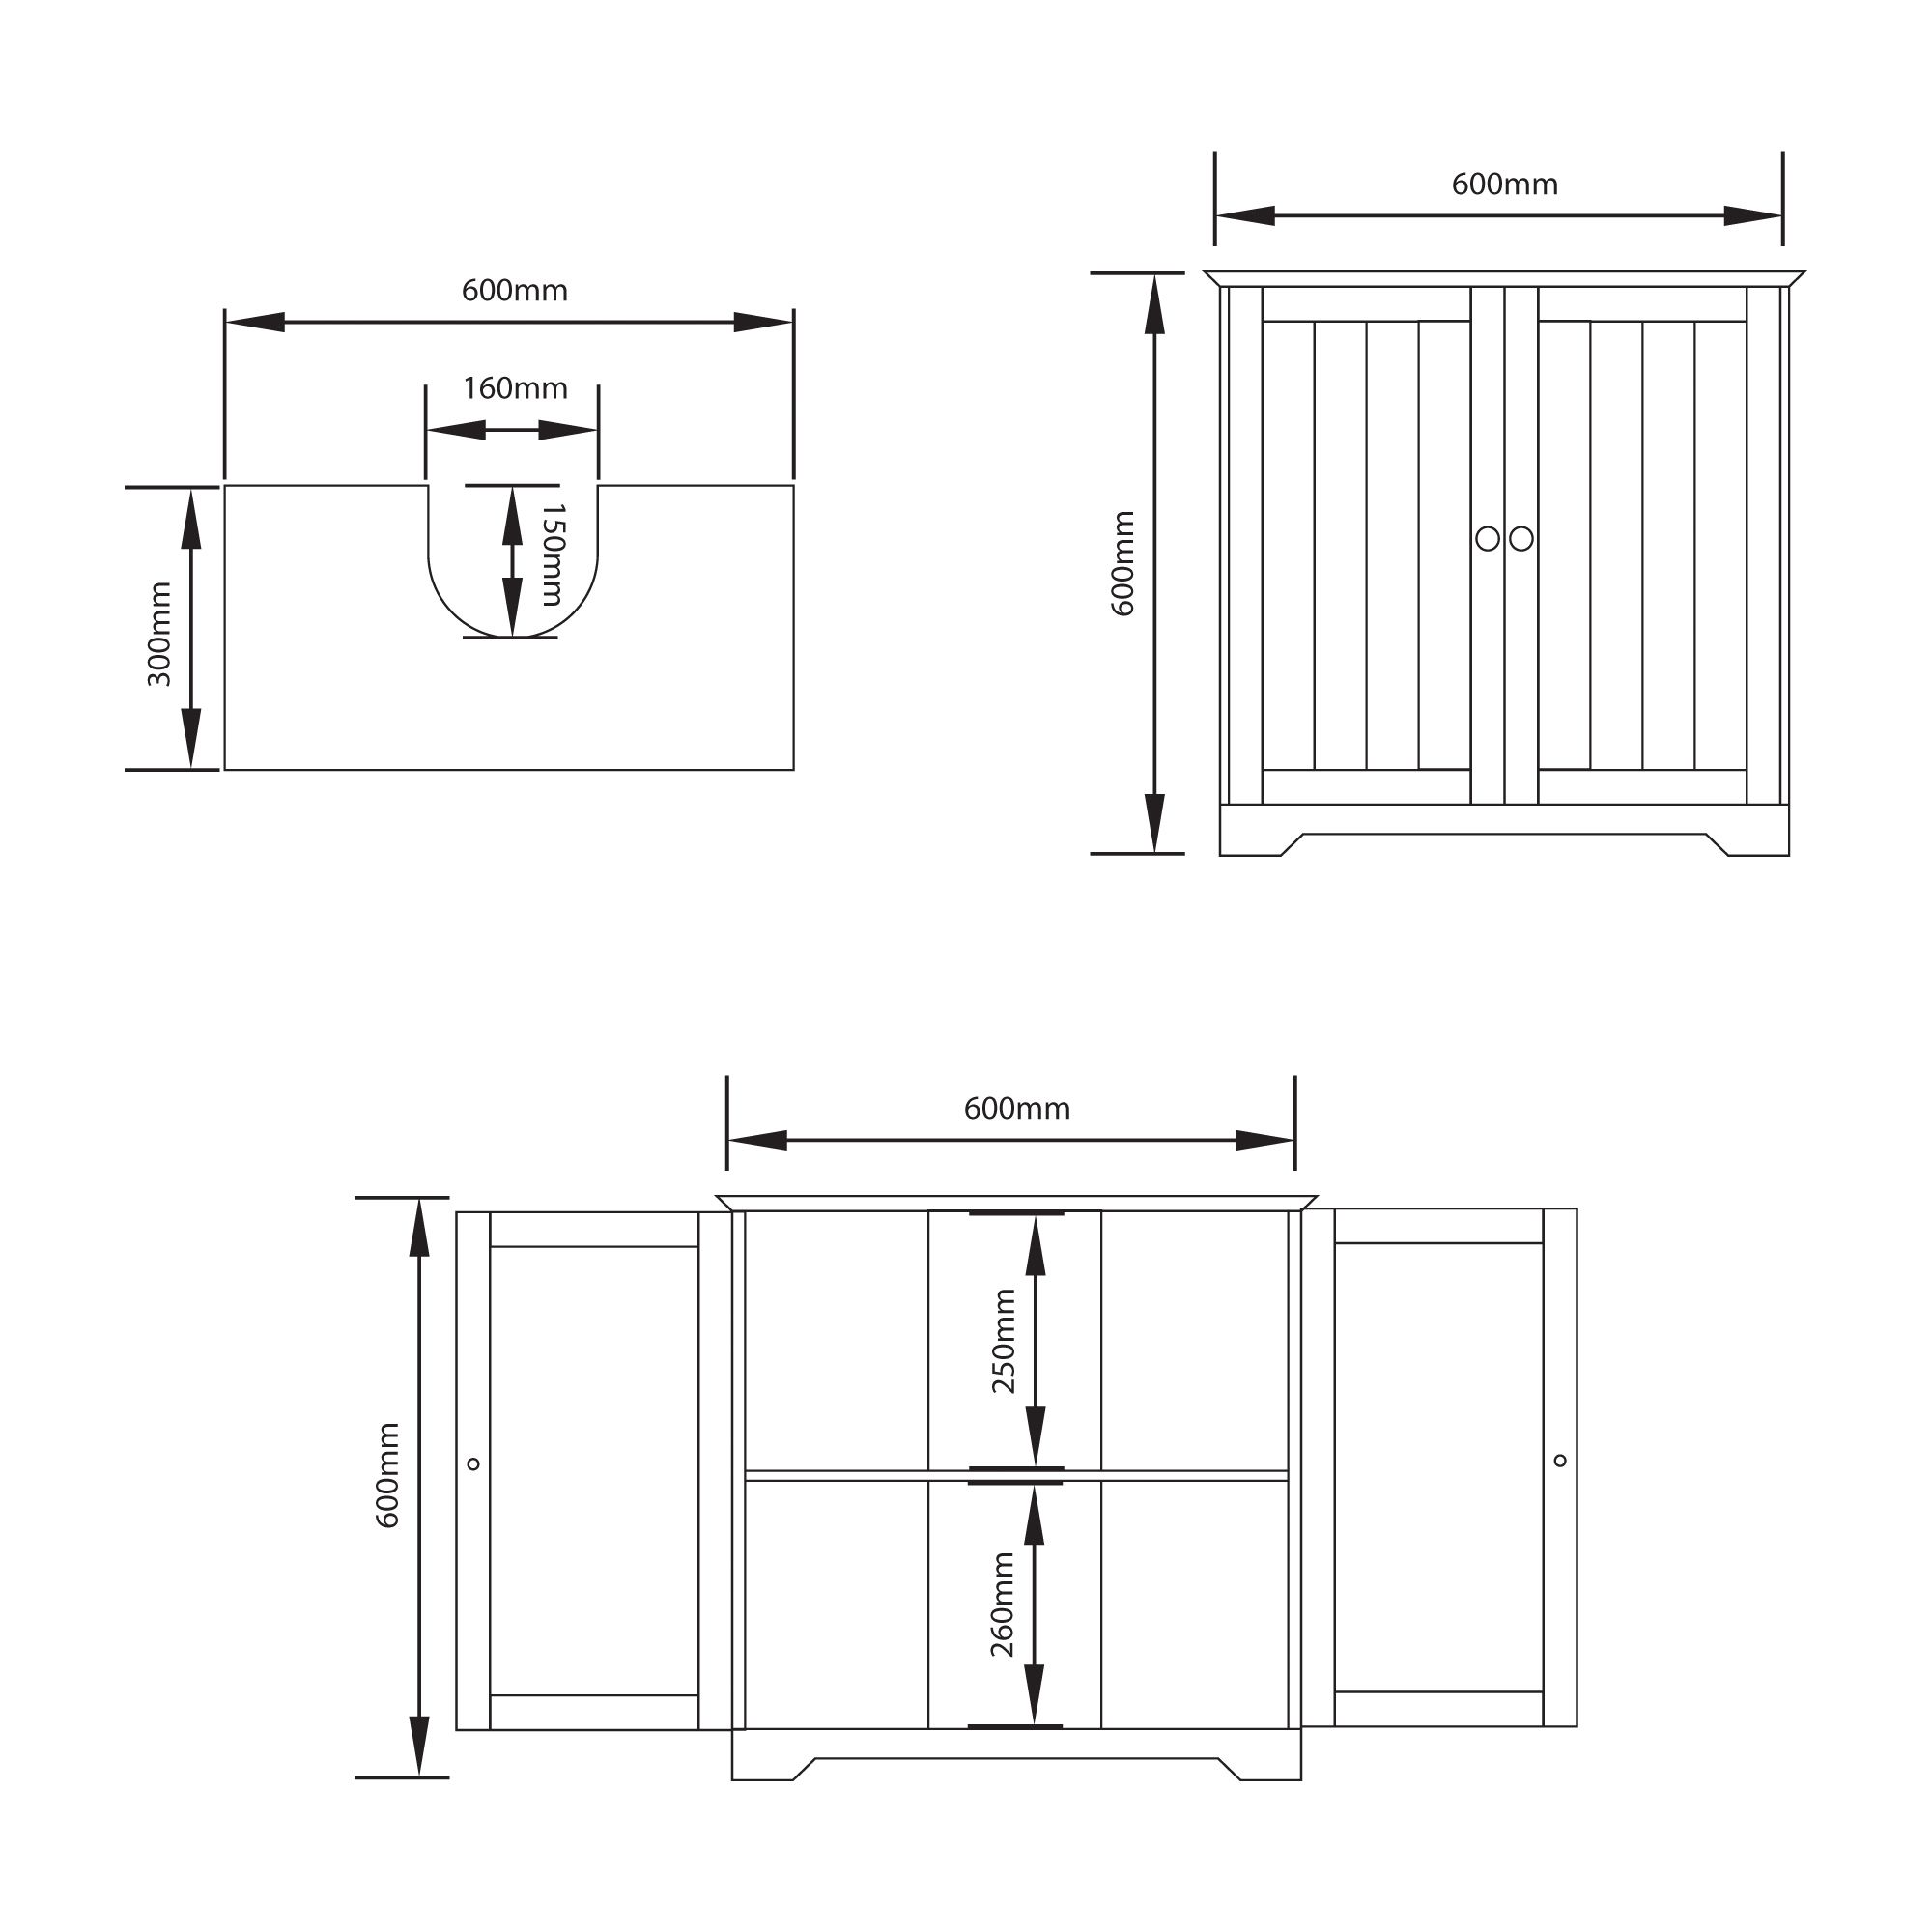 Lassic Hayle Matt Grey Freestanding Double Bathroom Sink cabinet (H) 600mm (W) 600mm